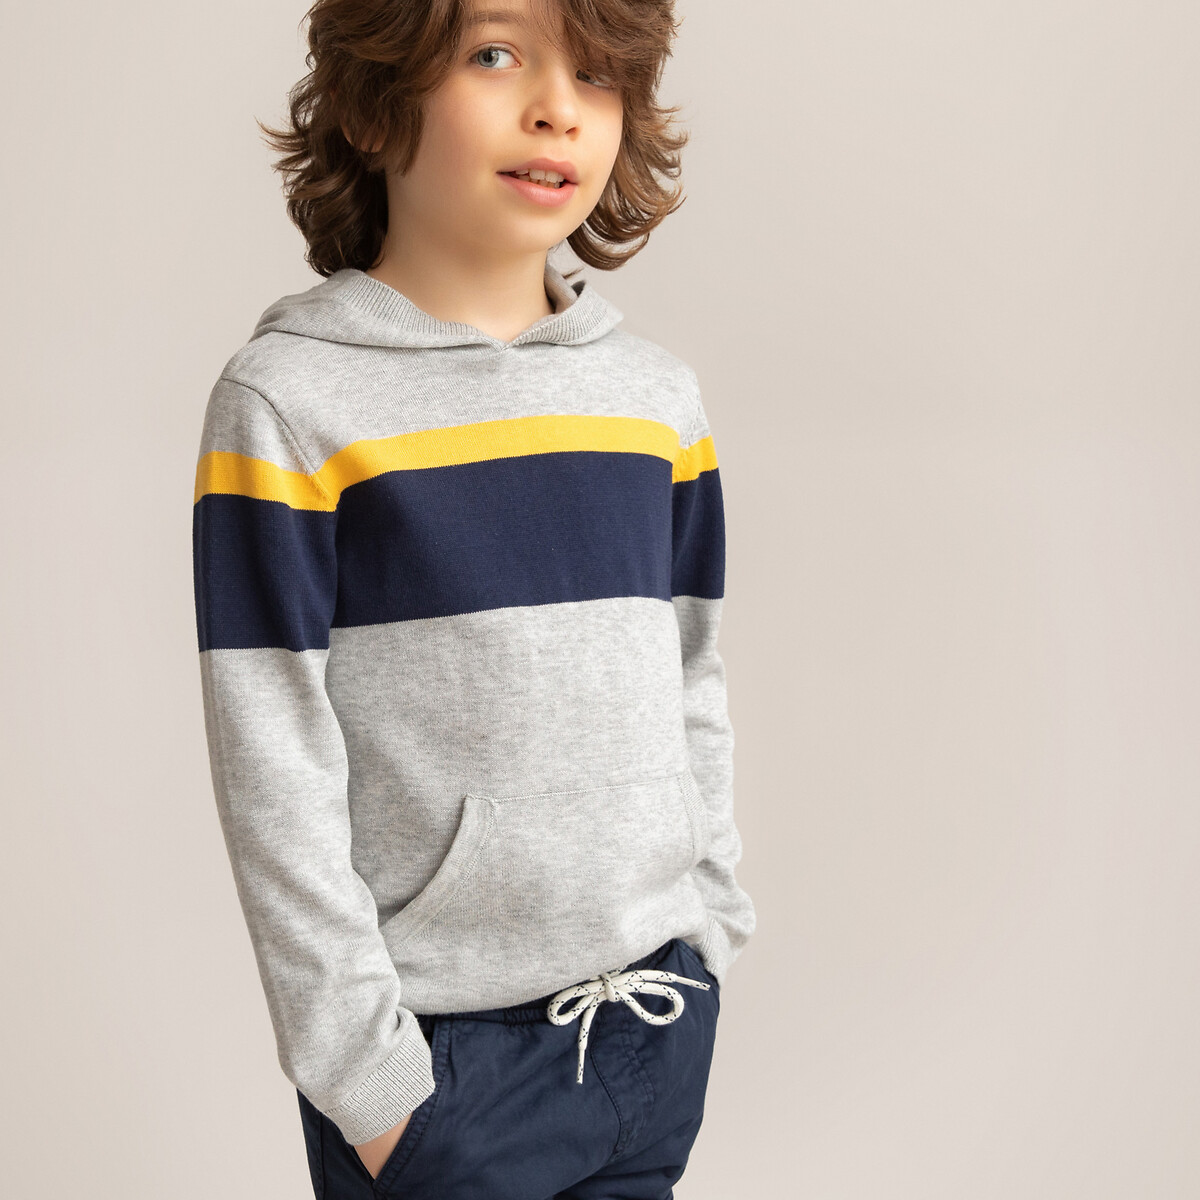 Пуловер С капюшоном из тонкого трикотажа 3-12 лет 8 лет - 126 см серый